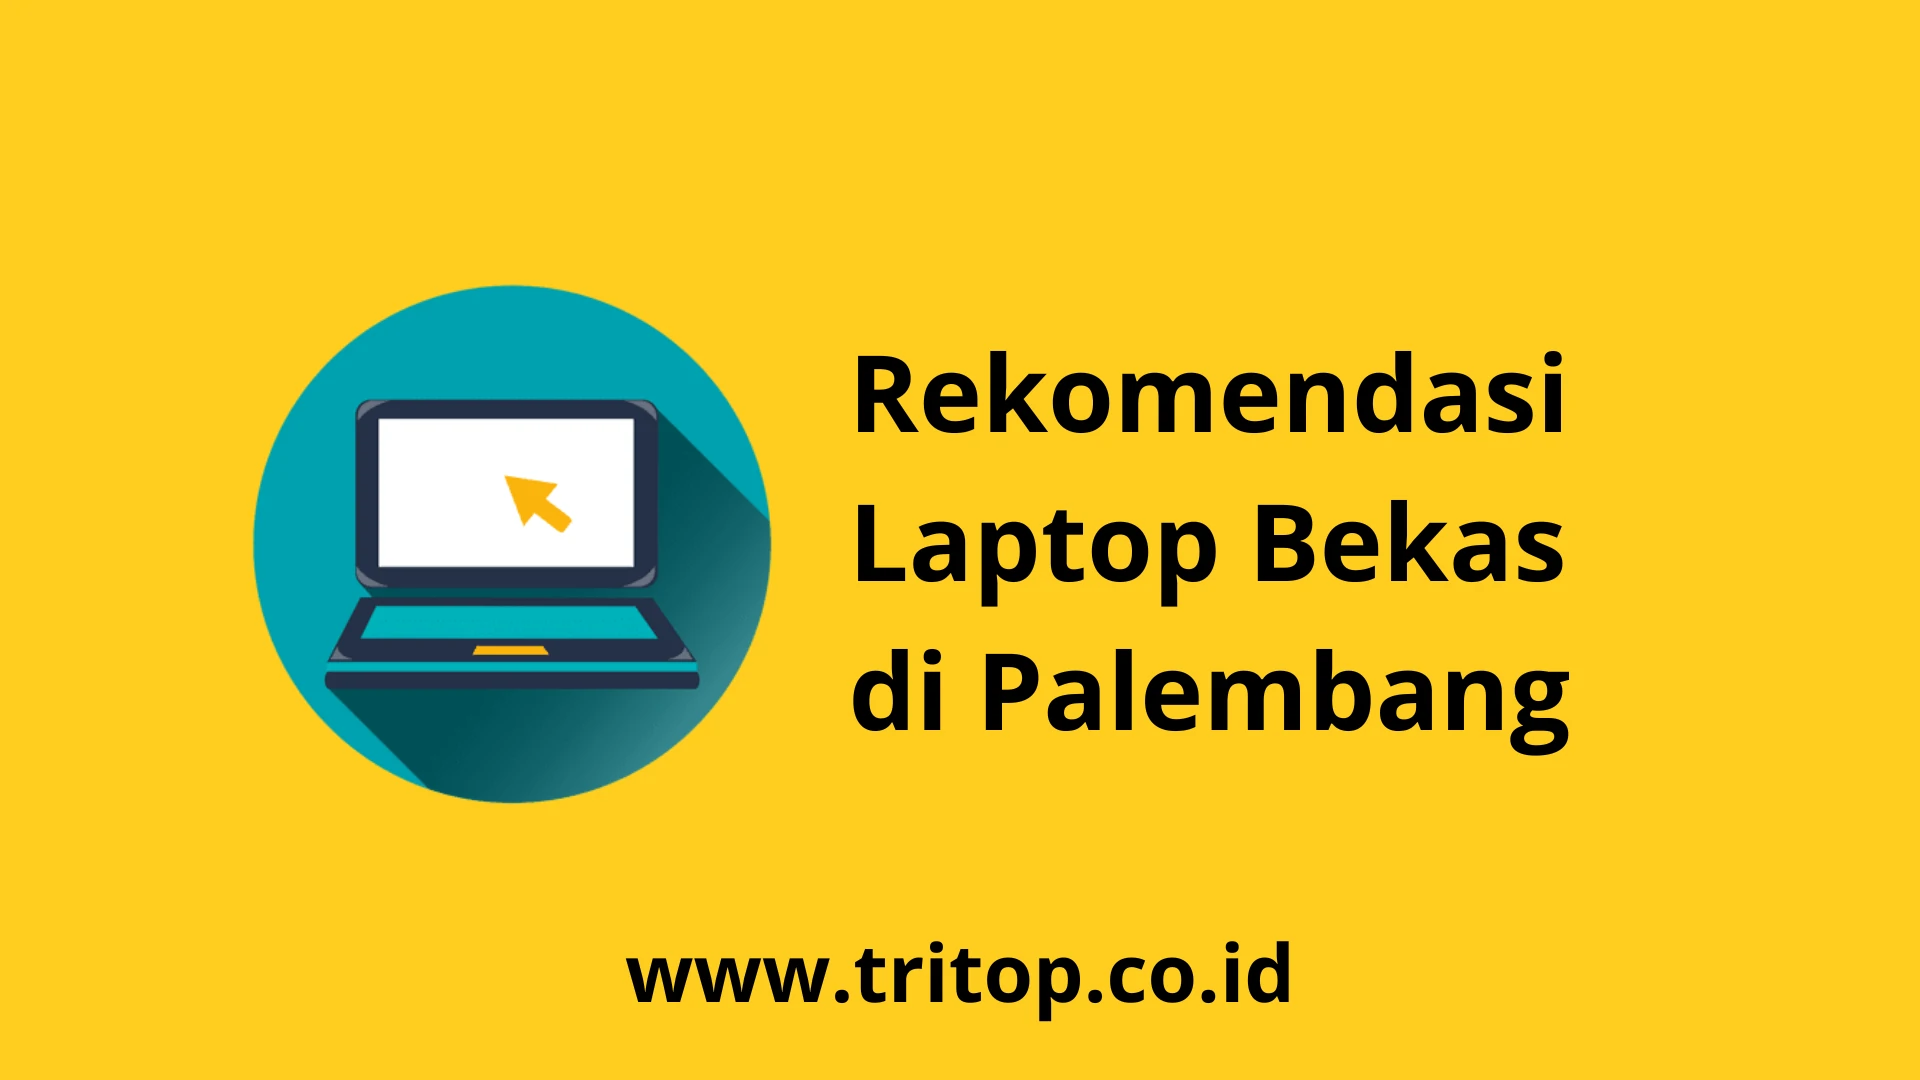 Laptop Bekas Palembang Tritop.co.id